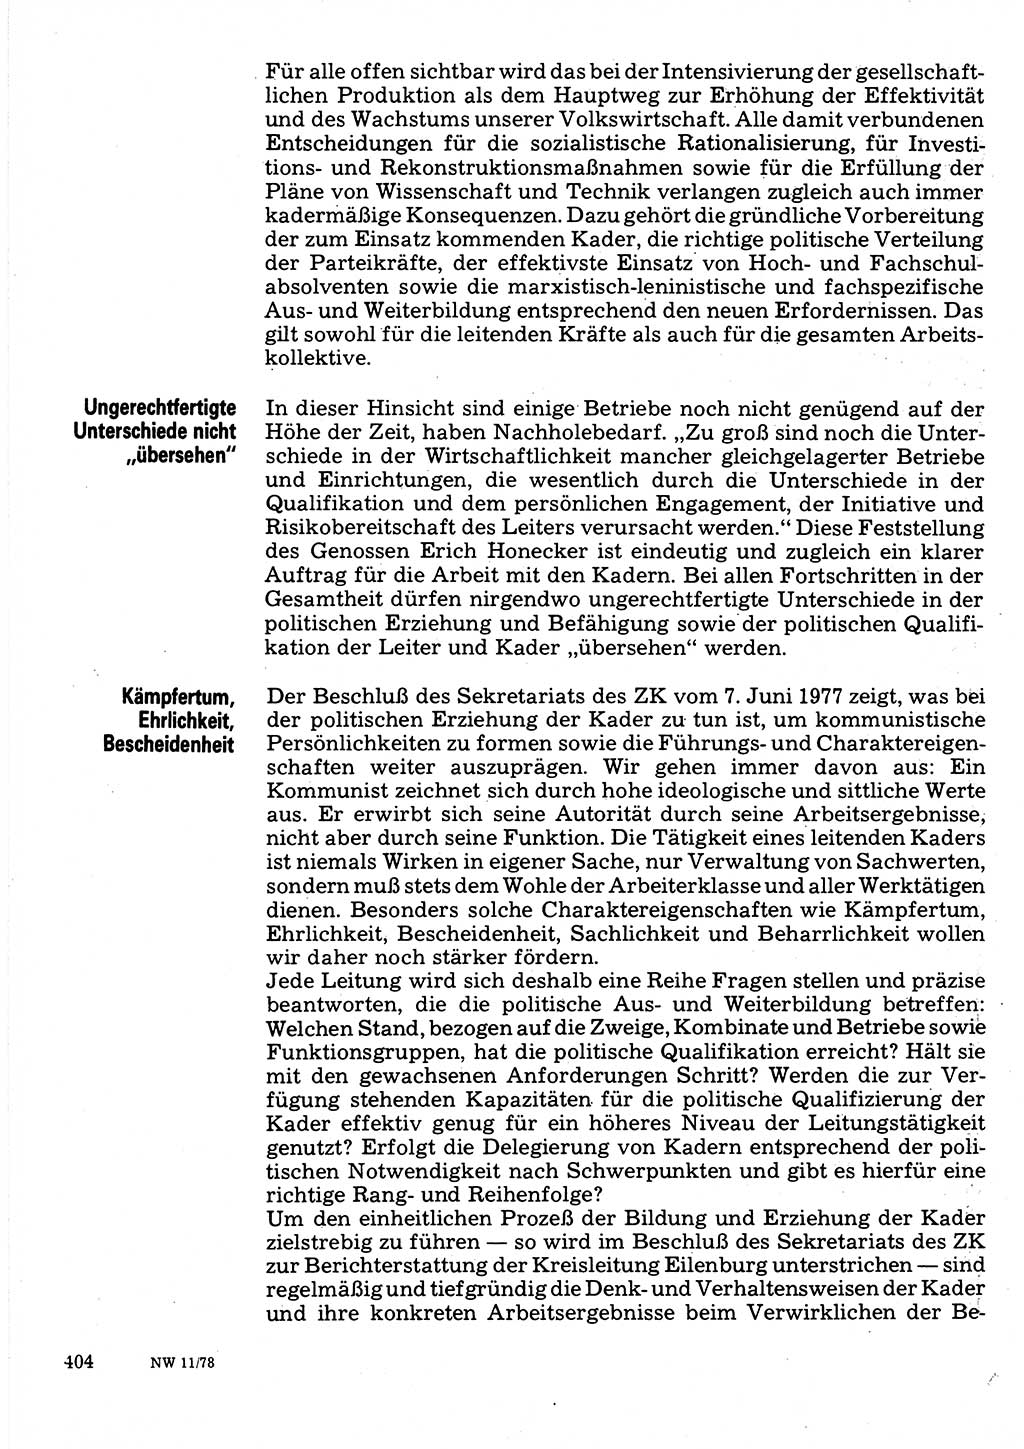 Neuer Weg (NW), Organ des Zentralkomitees (ZK) der SED (Sozialistische Einheitspartei Deutschlands) für Fragen des Parteilebens, 33. Jahrgang [Deutsche Demokratische Republik (DDR)] 1978, Seite 404 (NW ZK SED DDR 1978, S. 404)